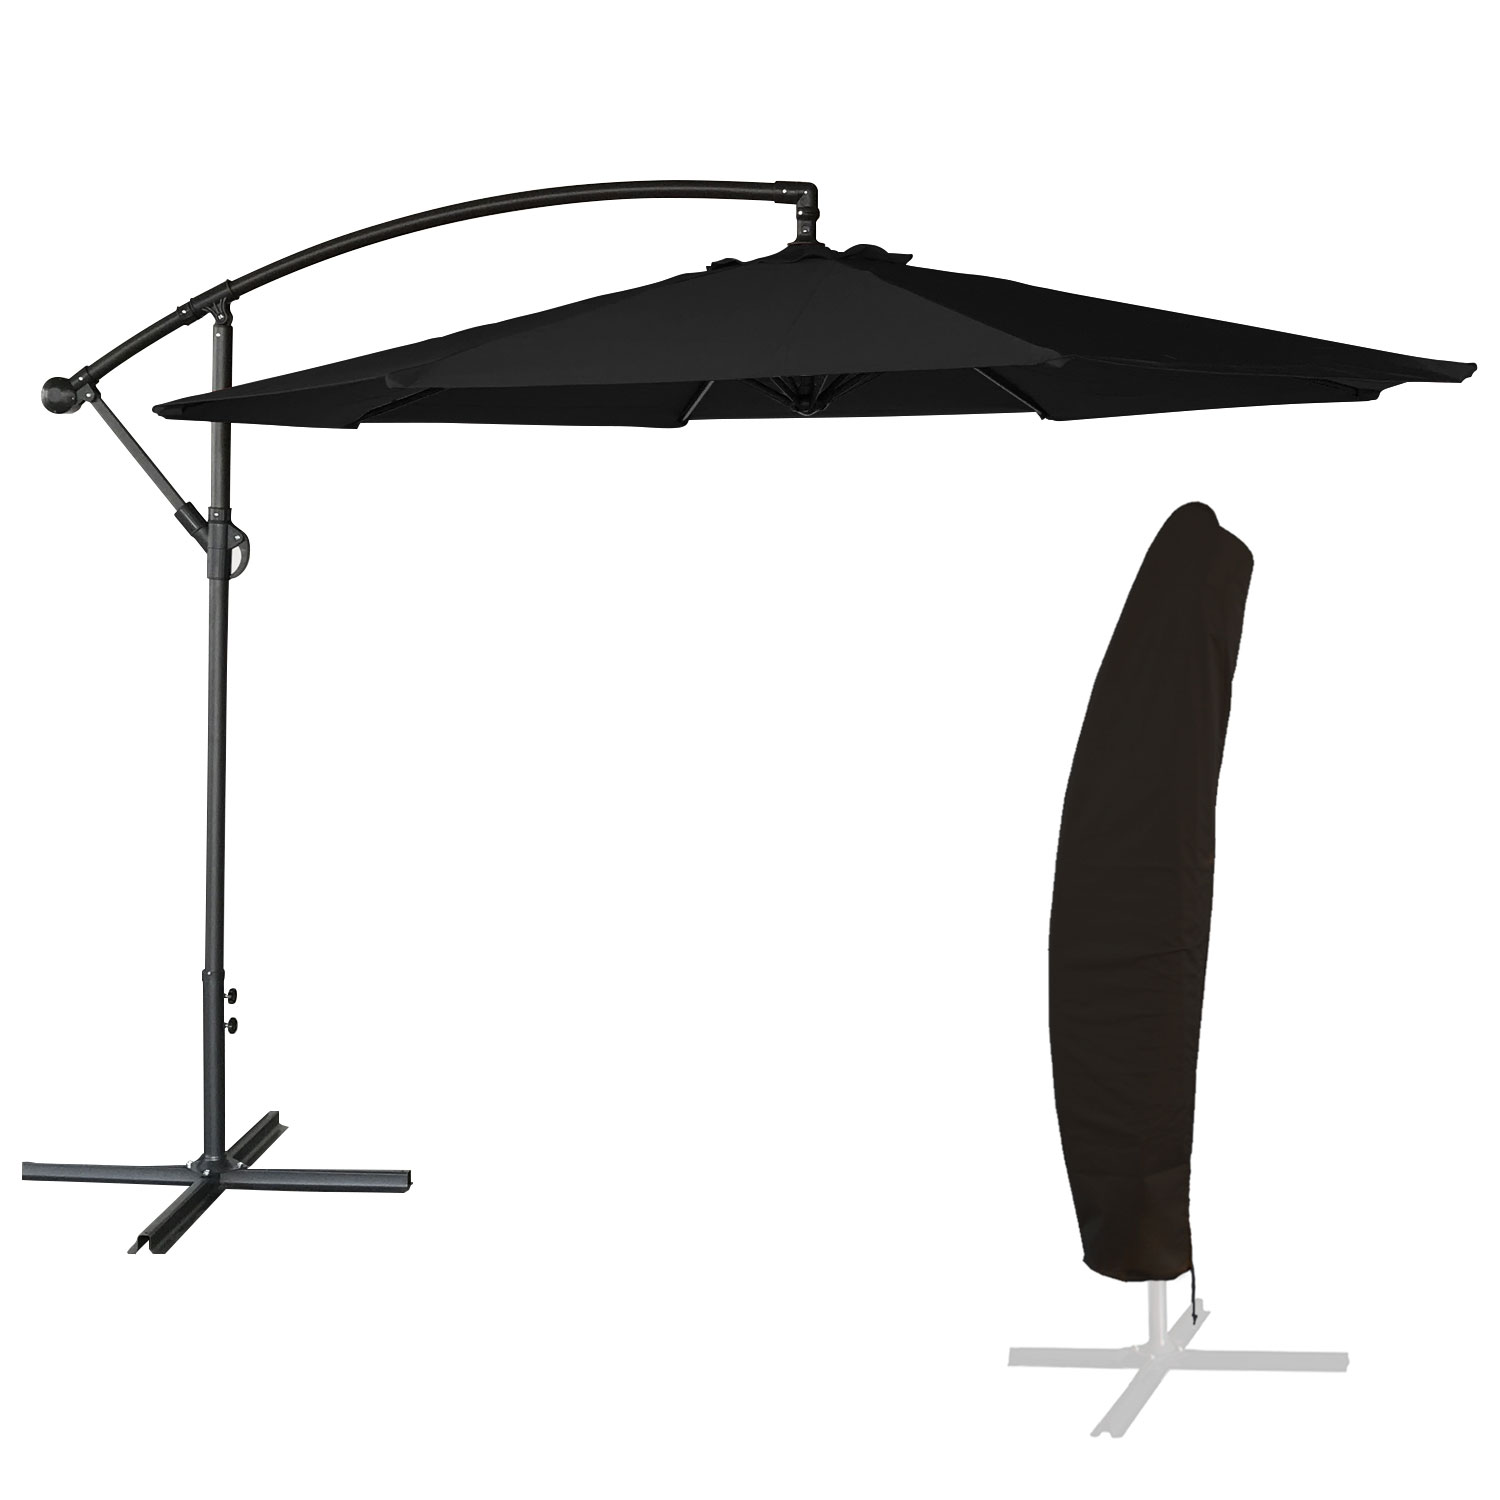 OAHU ombrellone rotondo diametro 3,50m nero + copertura